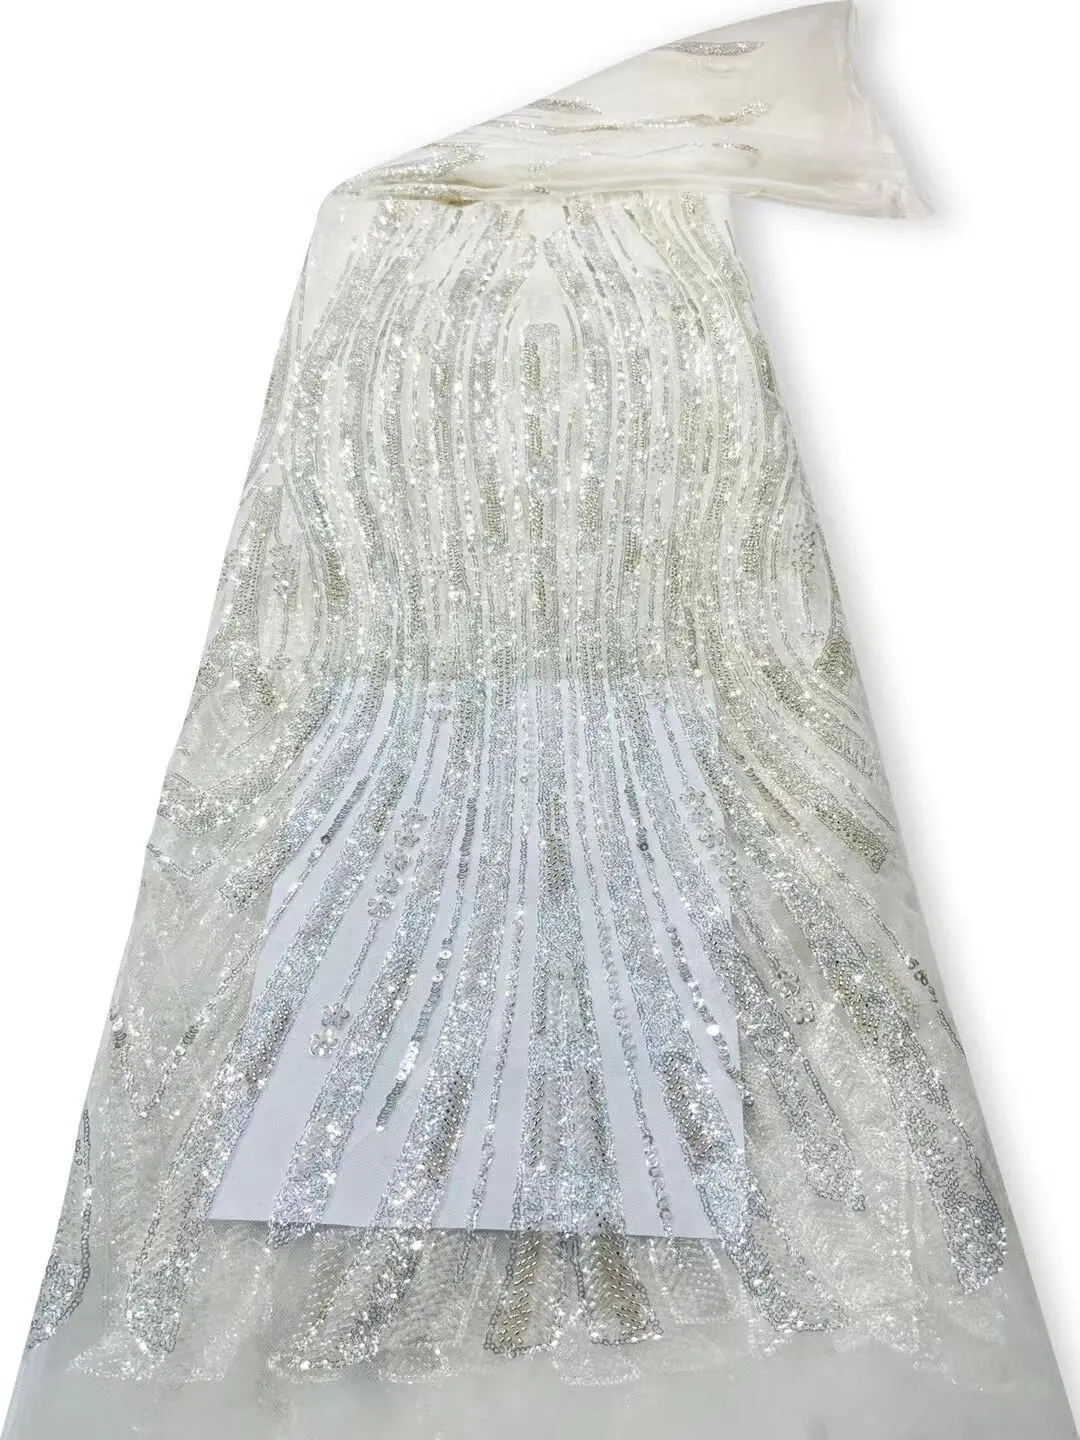  тюль кружевная ткань высокое качество африканская вышивка французский j-1302412 пайетки свадебное платье из бисера 4